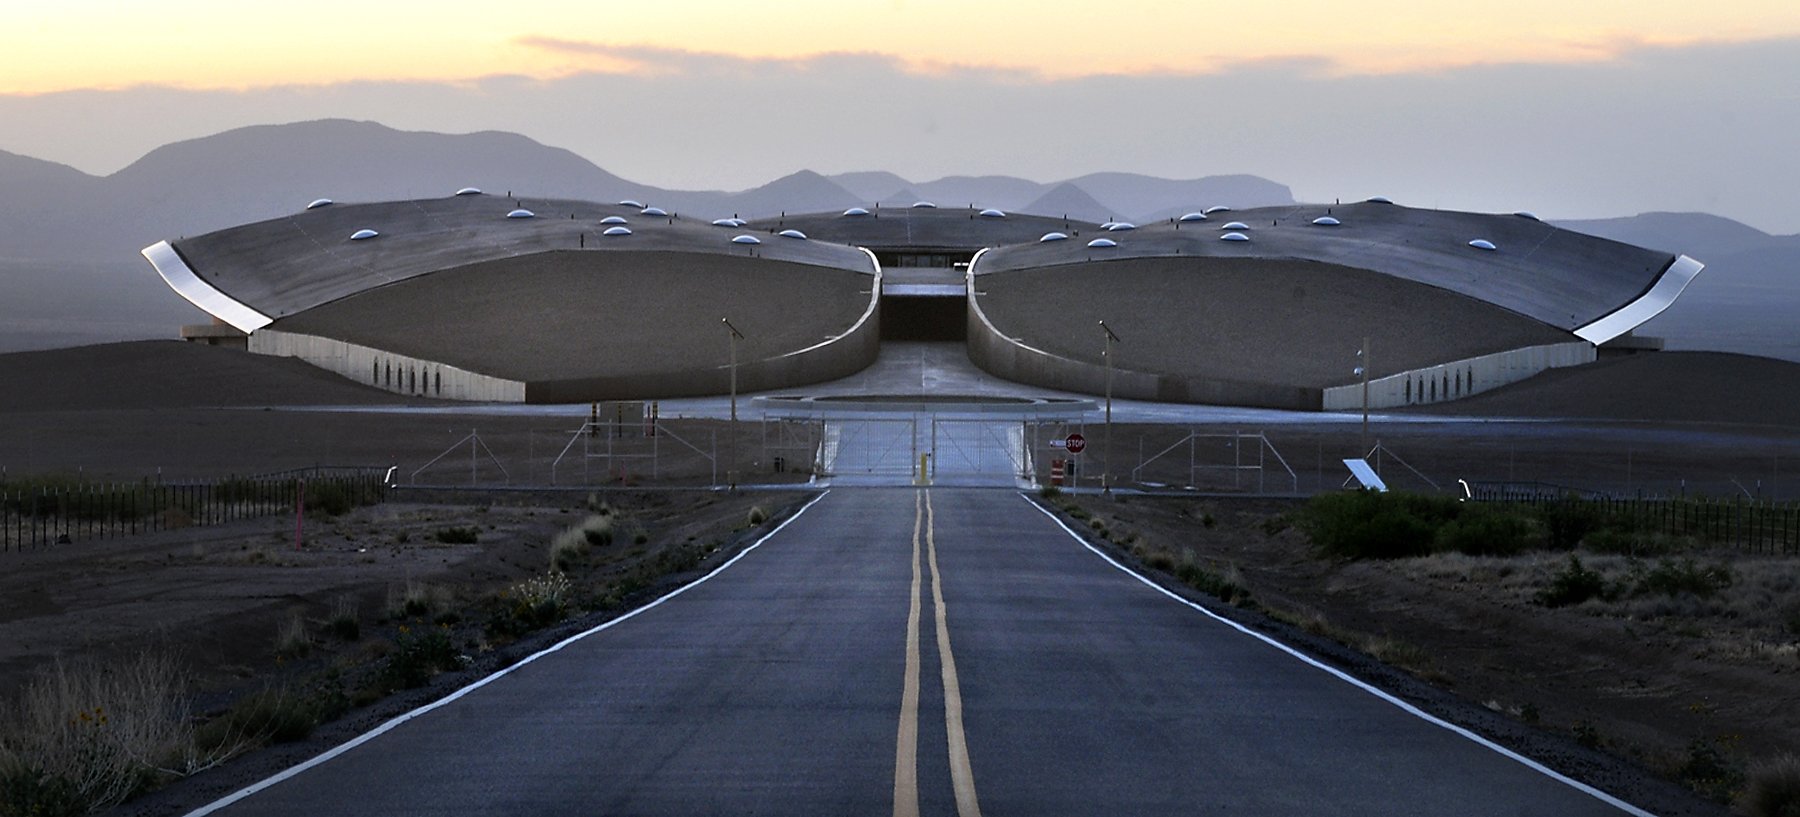 Espaçoporto da Virgin Galactic no Novo México (Fonte: Albuquerque Journal/Reprodução)